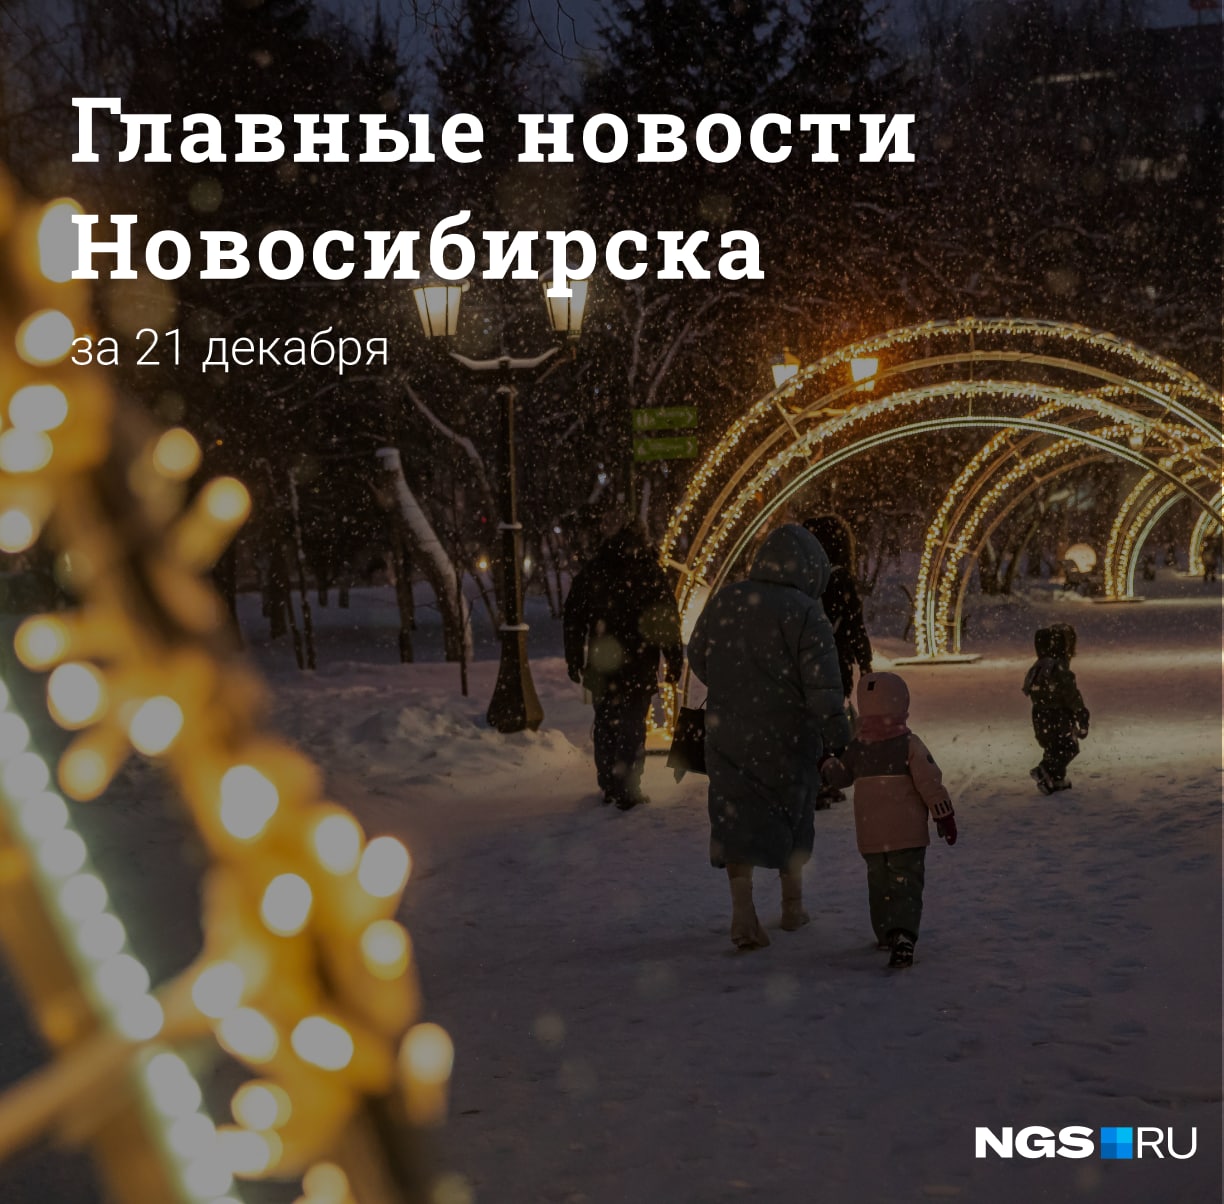 Новосибирск новости в телеграмме фото 92